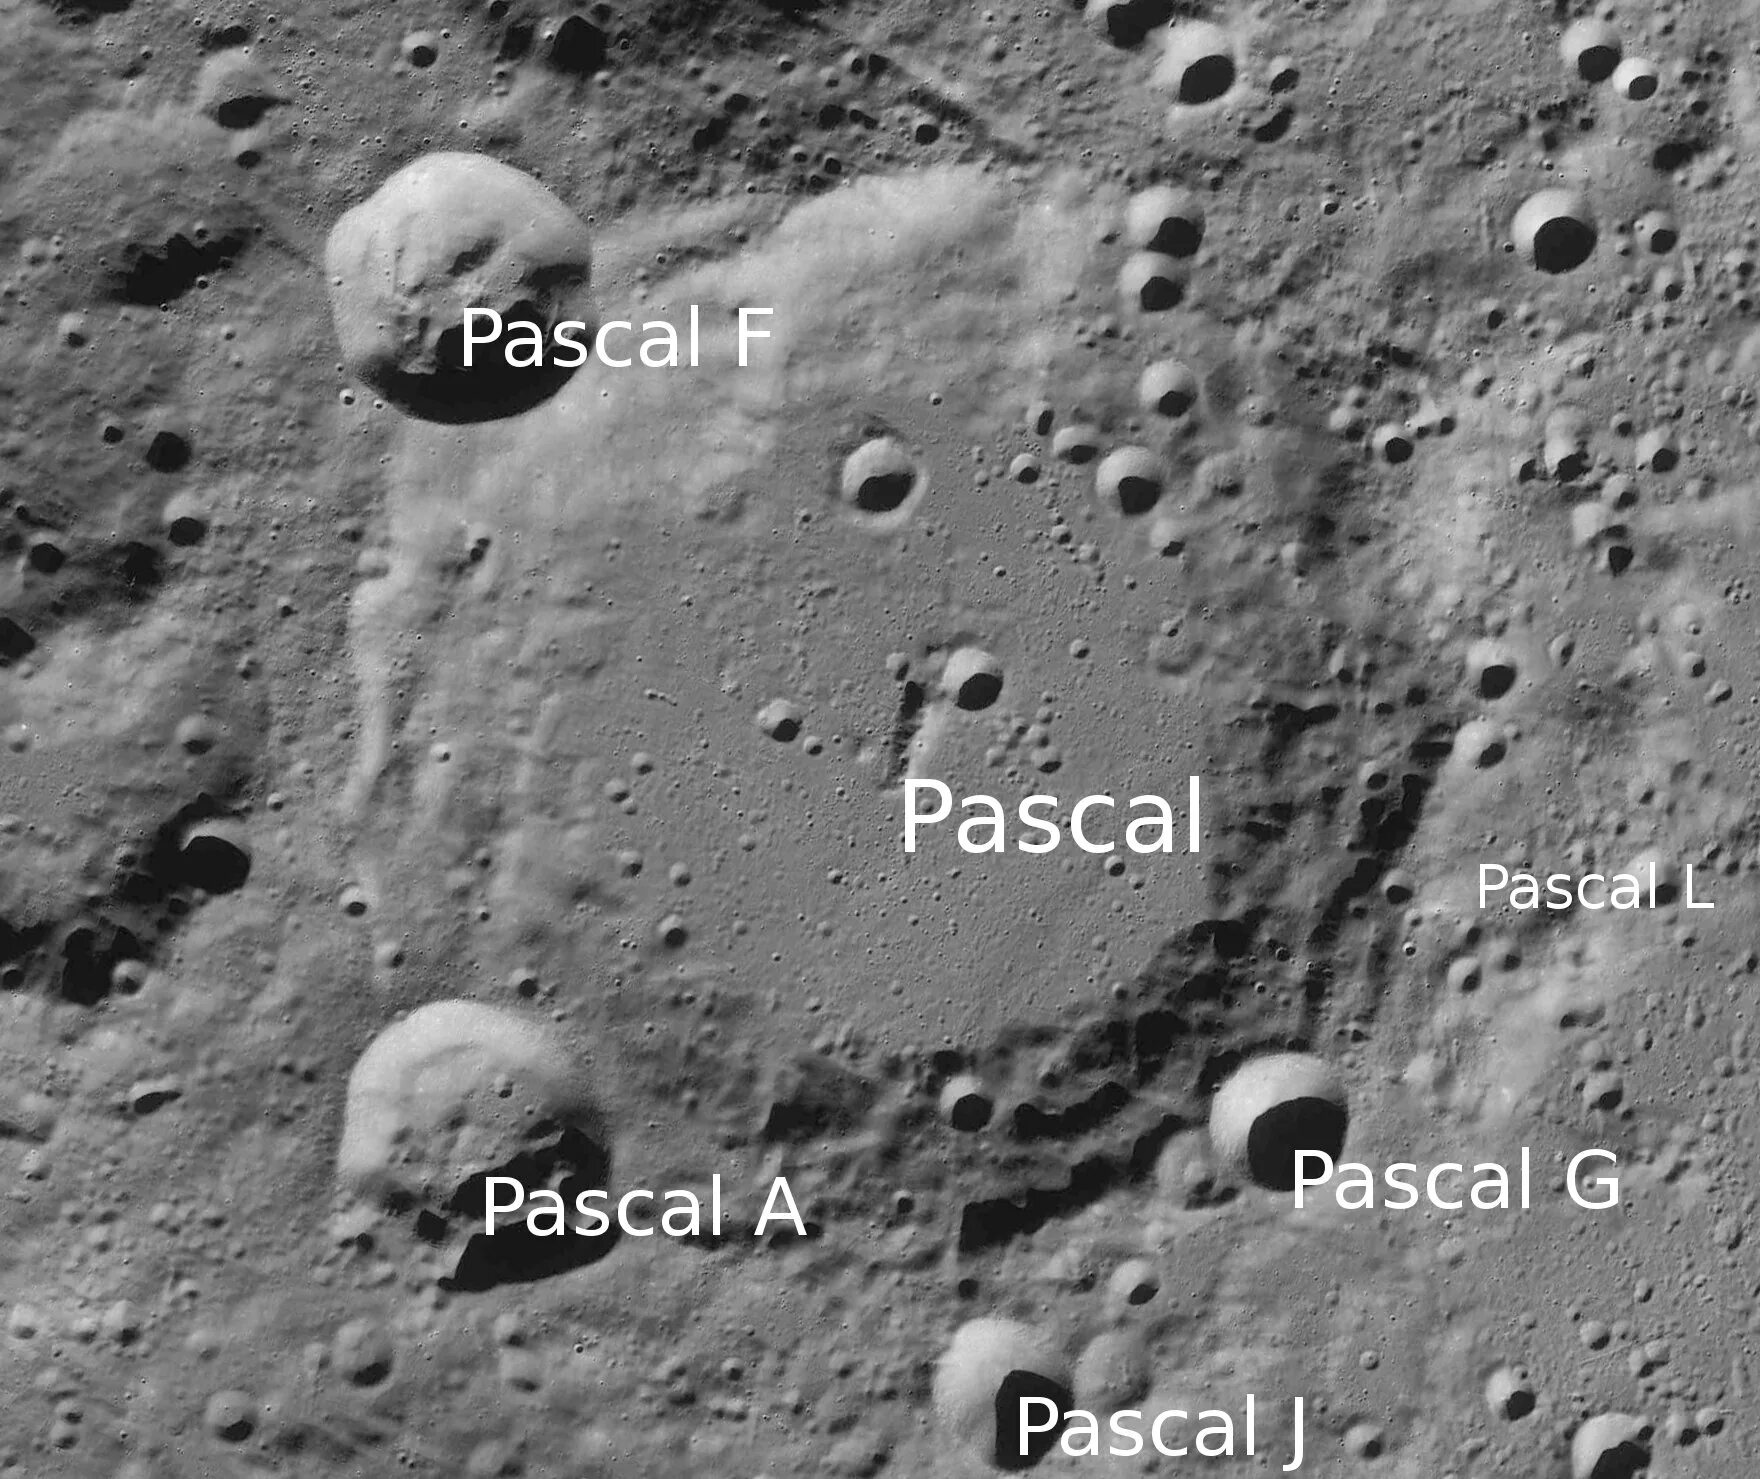 Кратер на луне в честь. Кратер Паскаль. Лунные кратеры. Кратеры на Луне. Кратер на Луне в честь Паскаля.